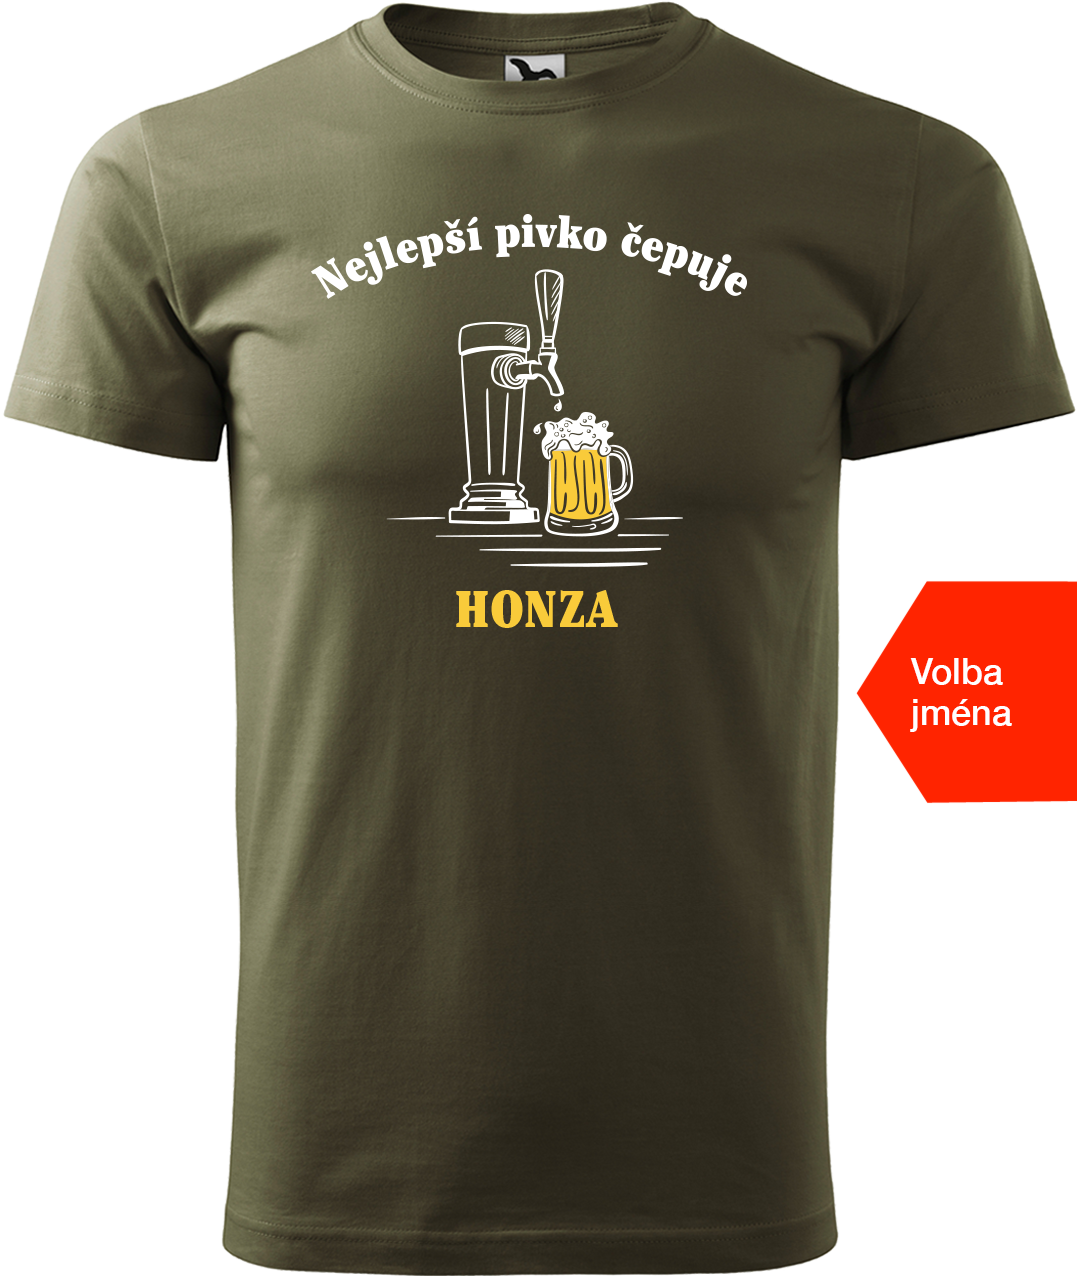 Pivní tričko - Nejlepší pivko čepuje + jméno Velikost: 2XL, Barva: Military (69)